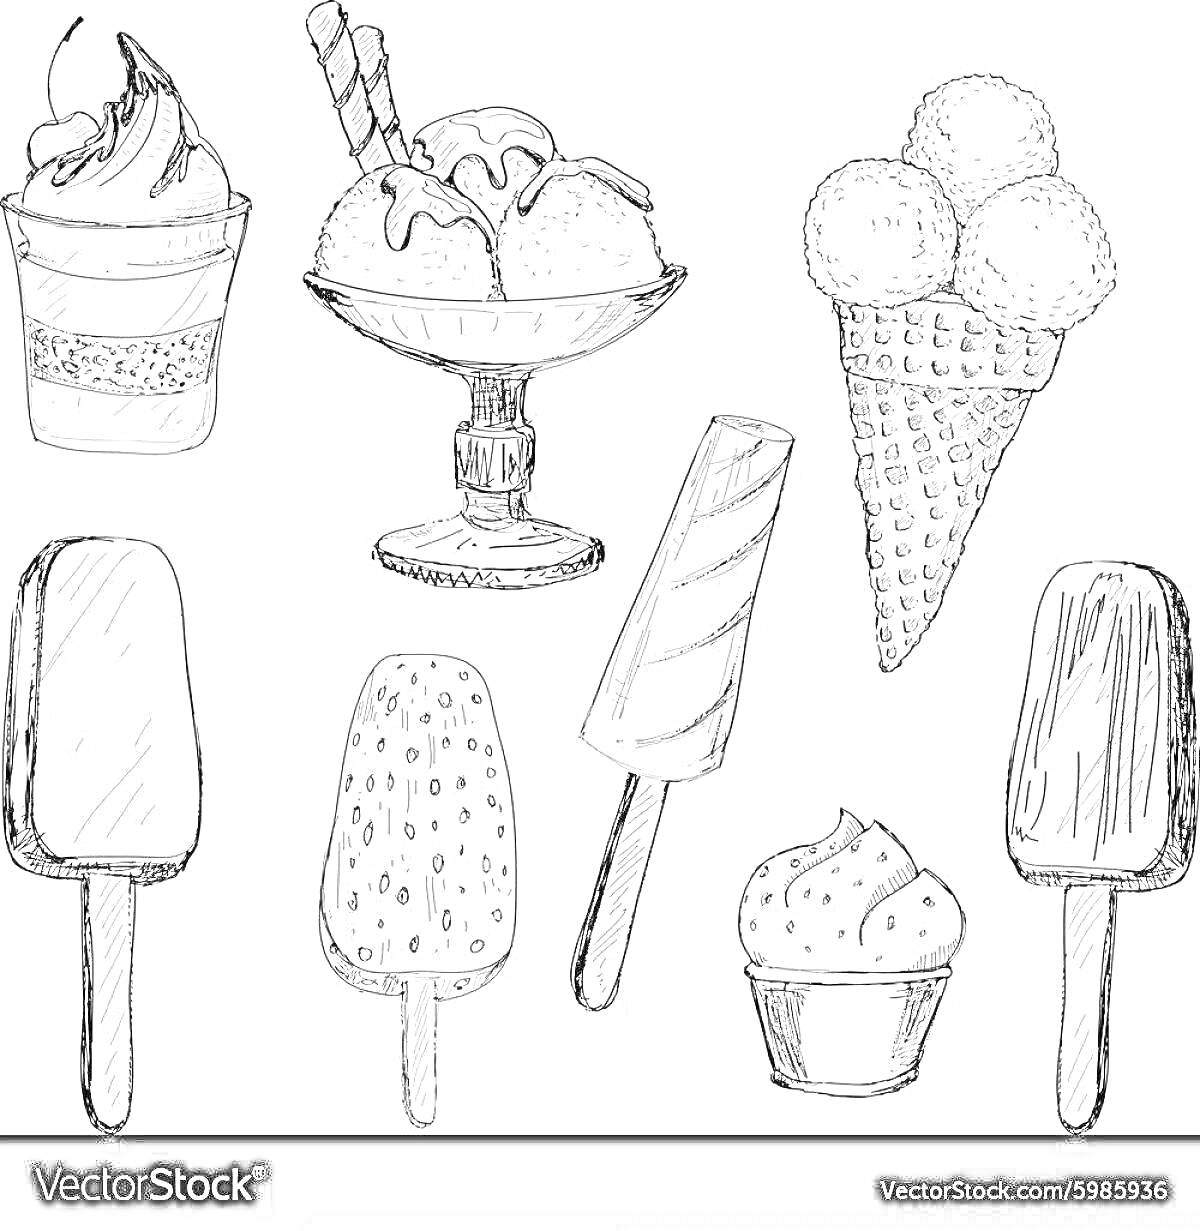 Раскраска Набор эскимо и мороженого (рожок с тремя шариками, мороженое в стаканчике с кремом и трубочками, стакан с мягким мороженым на ножке, эскимо на палочке с шоколадной глазурью, эскимо на палочке с посыпкой, эскимо на палочке в полоску, стакан с кремом)